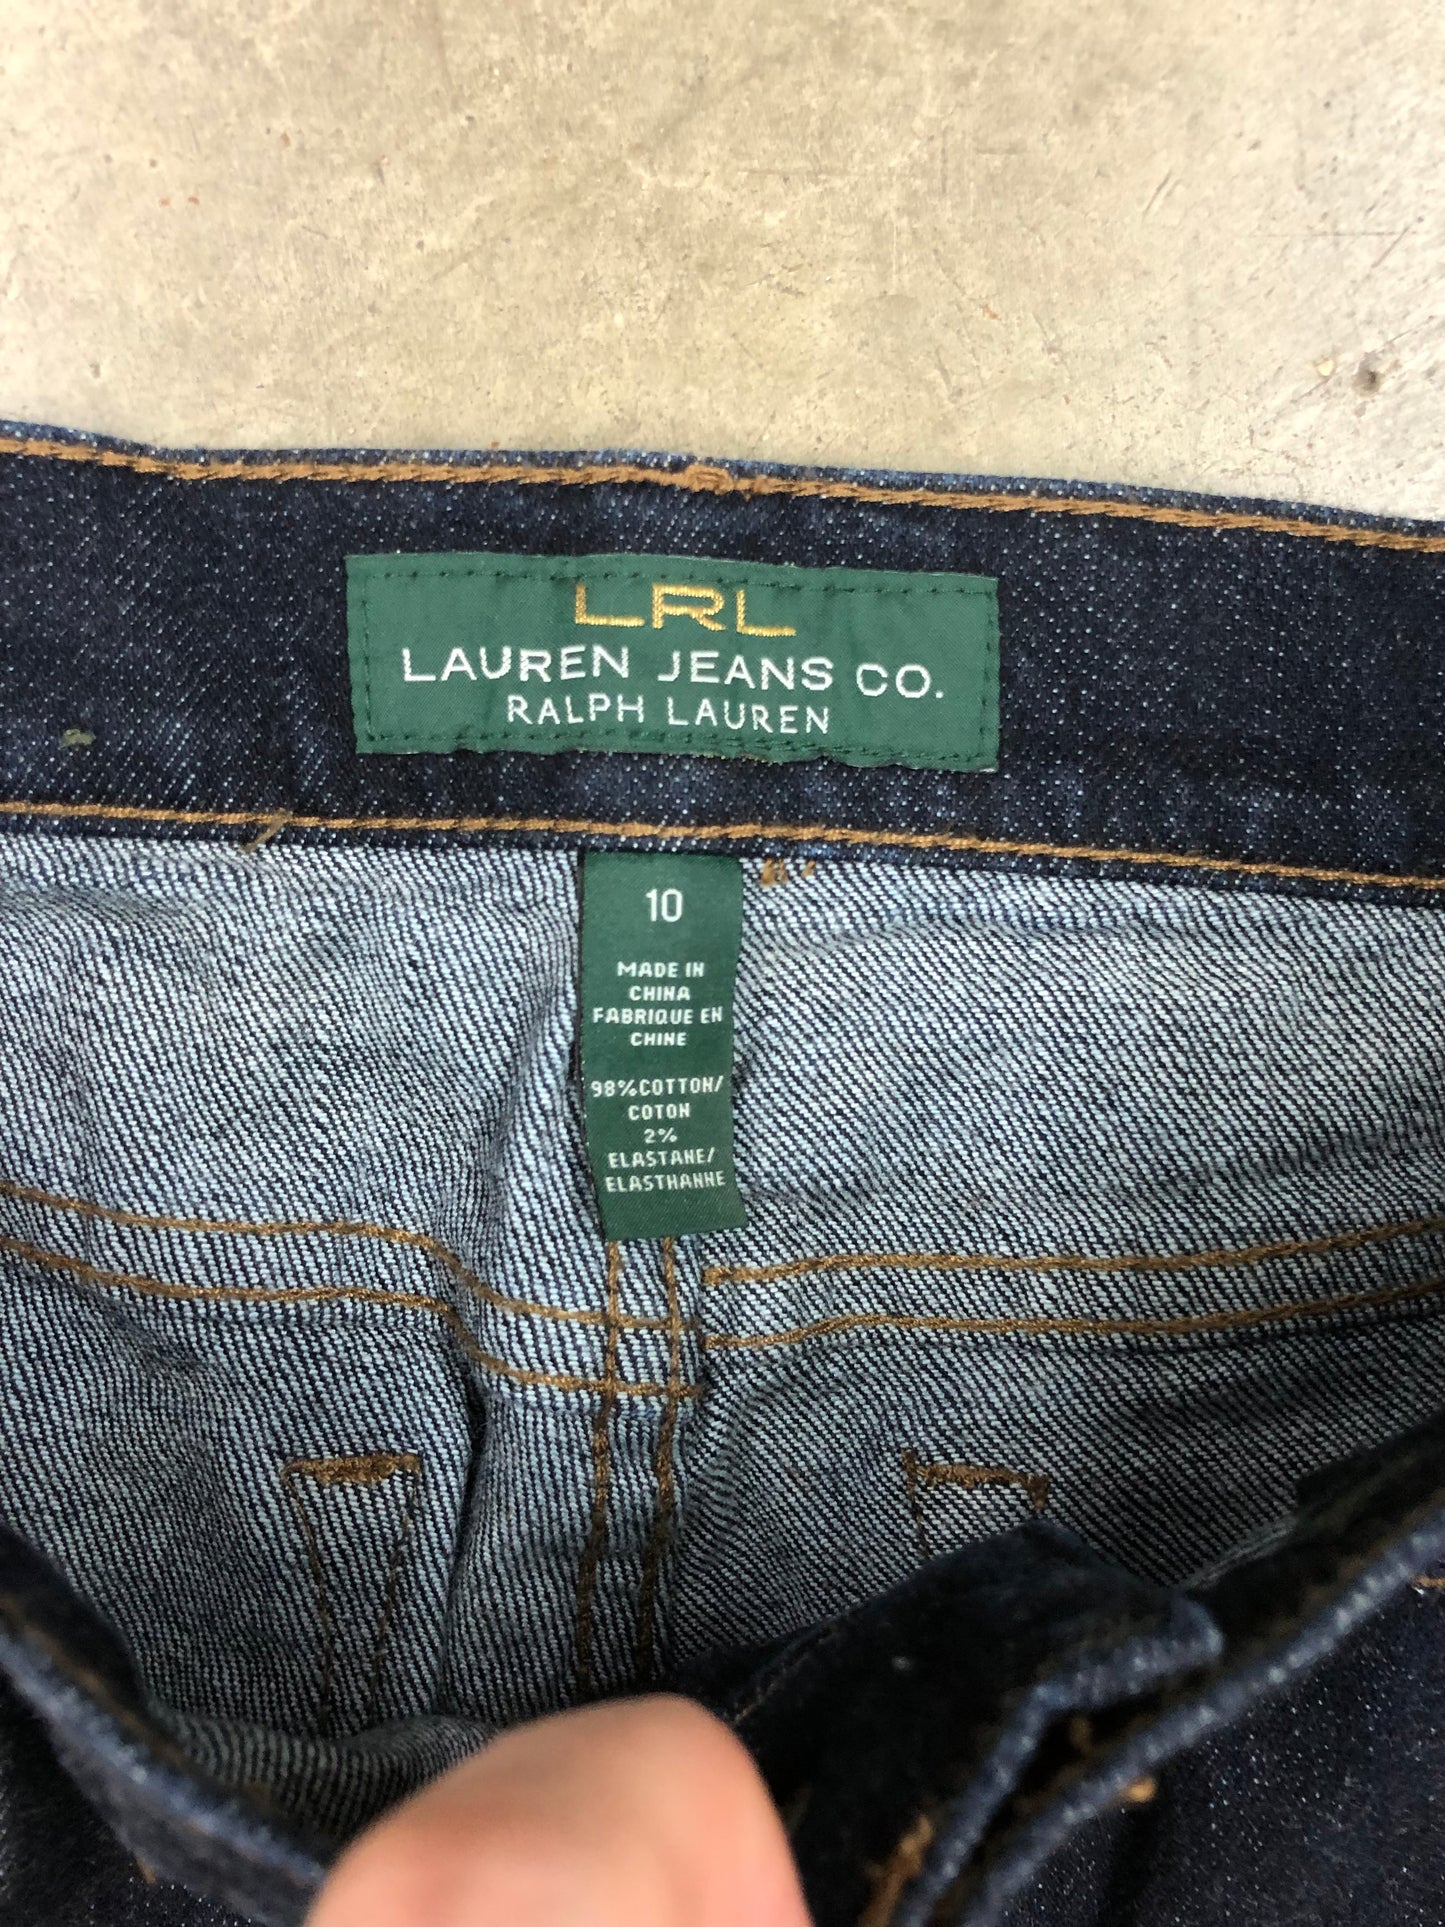 VTG Ralph Lauren Womens Jeans Sz 32x29